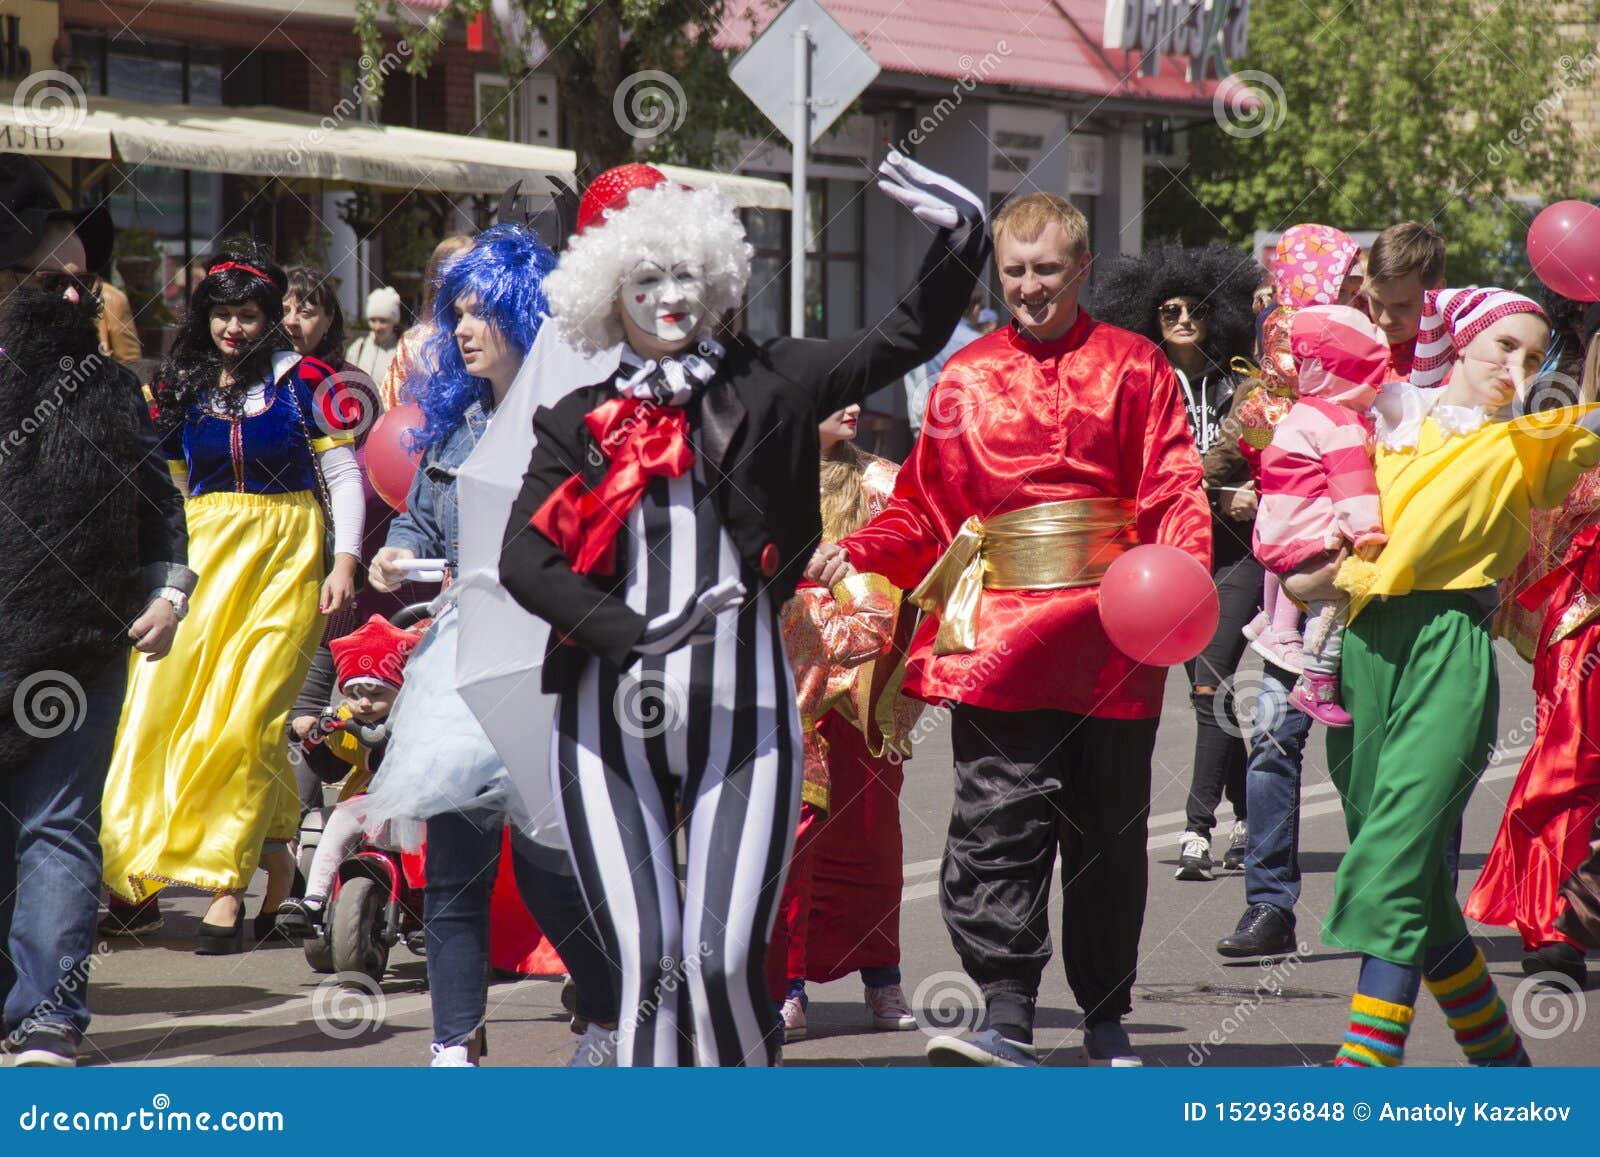 Russia, Krasnoyarsk, June 2019: People in Fancy Dress at a Children`s